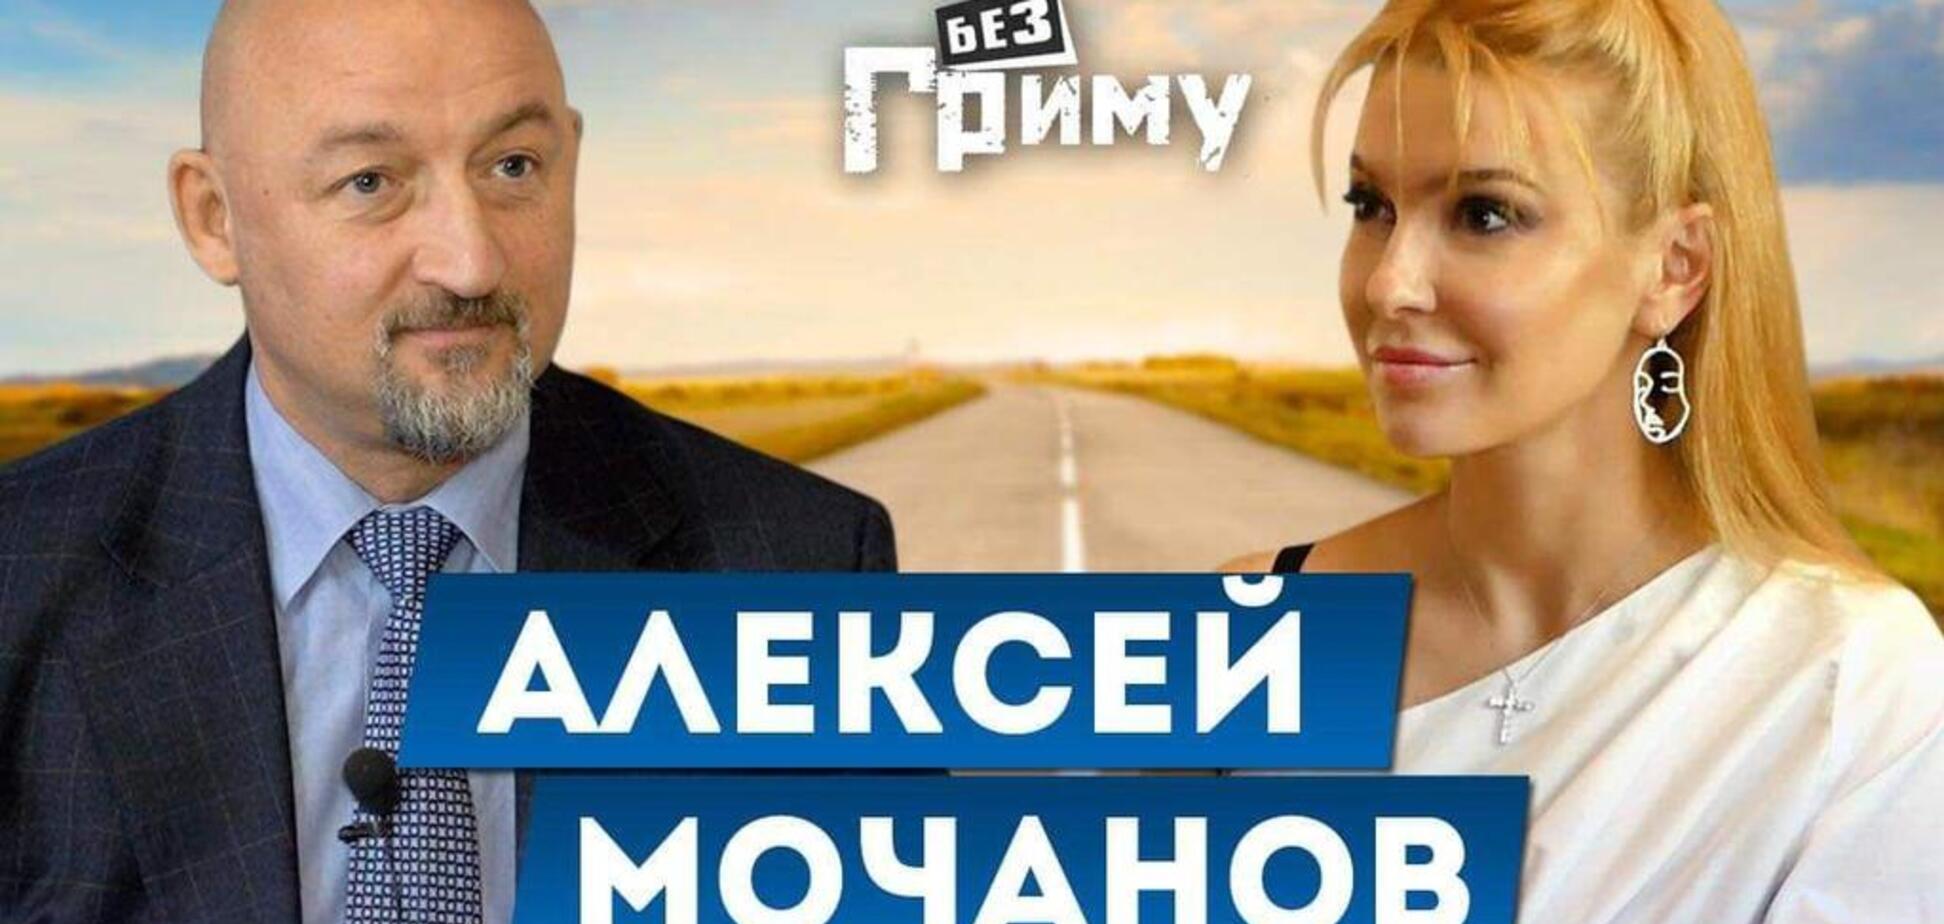 Евровидение — игра, чтобы люди поняли, какие страны против каких дружат – Алексей Мочанов в шоу 'Без грима'